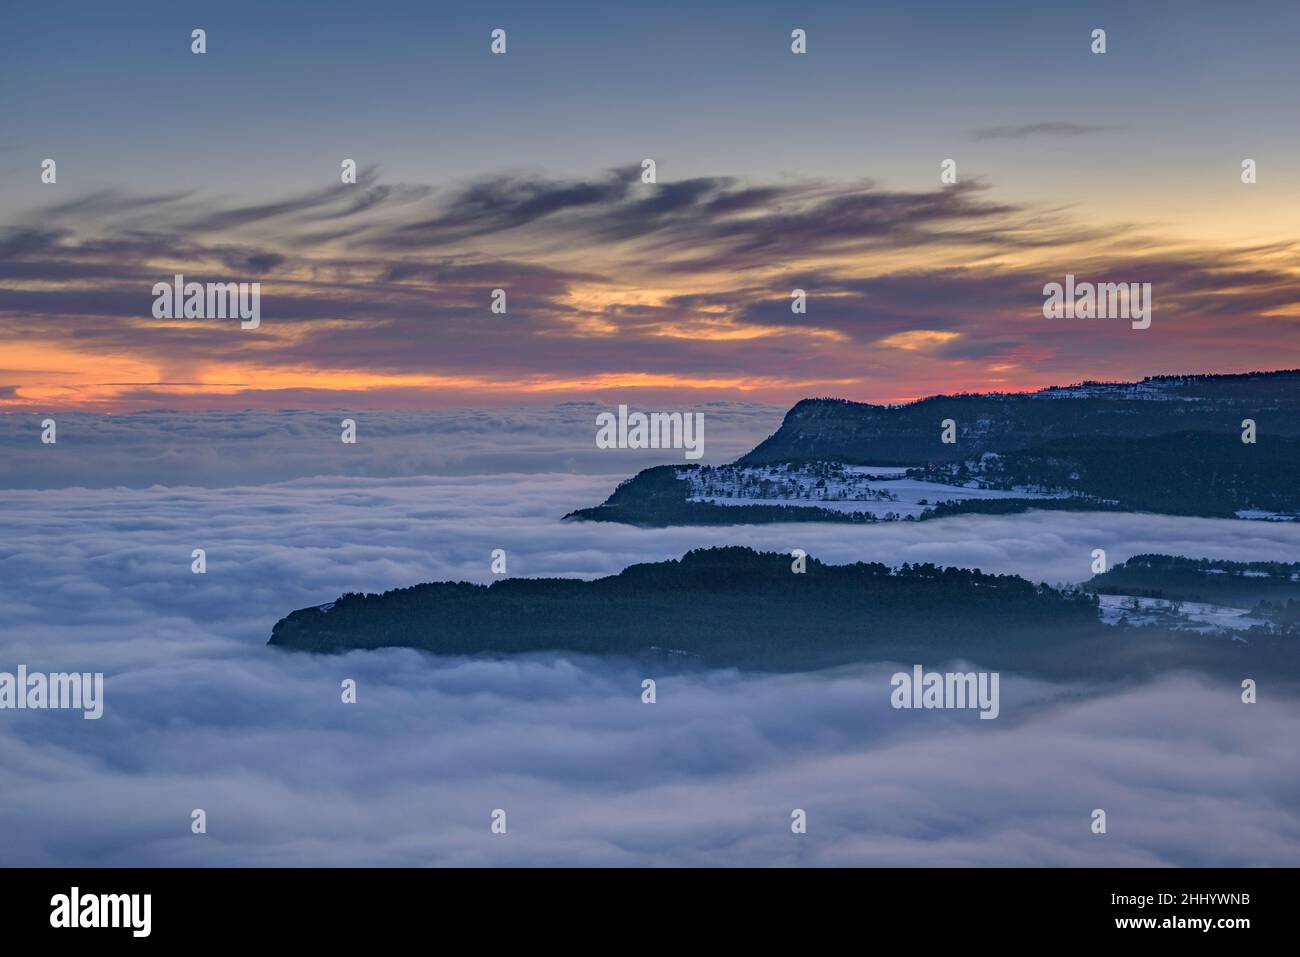 La meseta de Capolat y las montañas de Les Tres Maries en una puesta de sol de invierno con un mar de nubes sobre la región central de Cataluña (Cataluña, España) Foto de stock